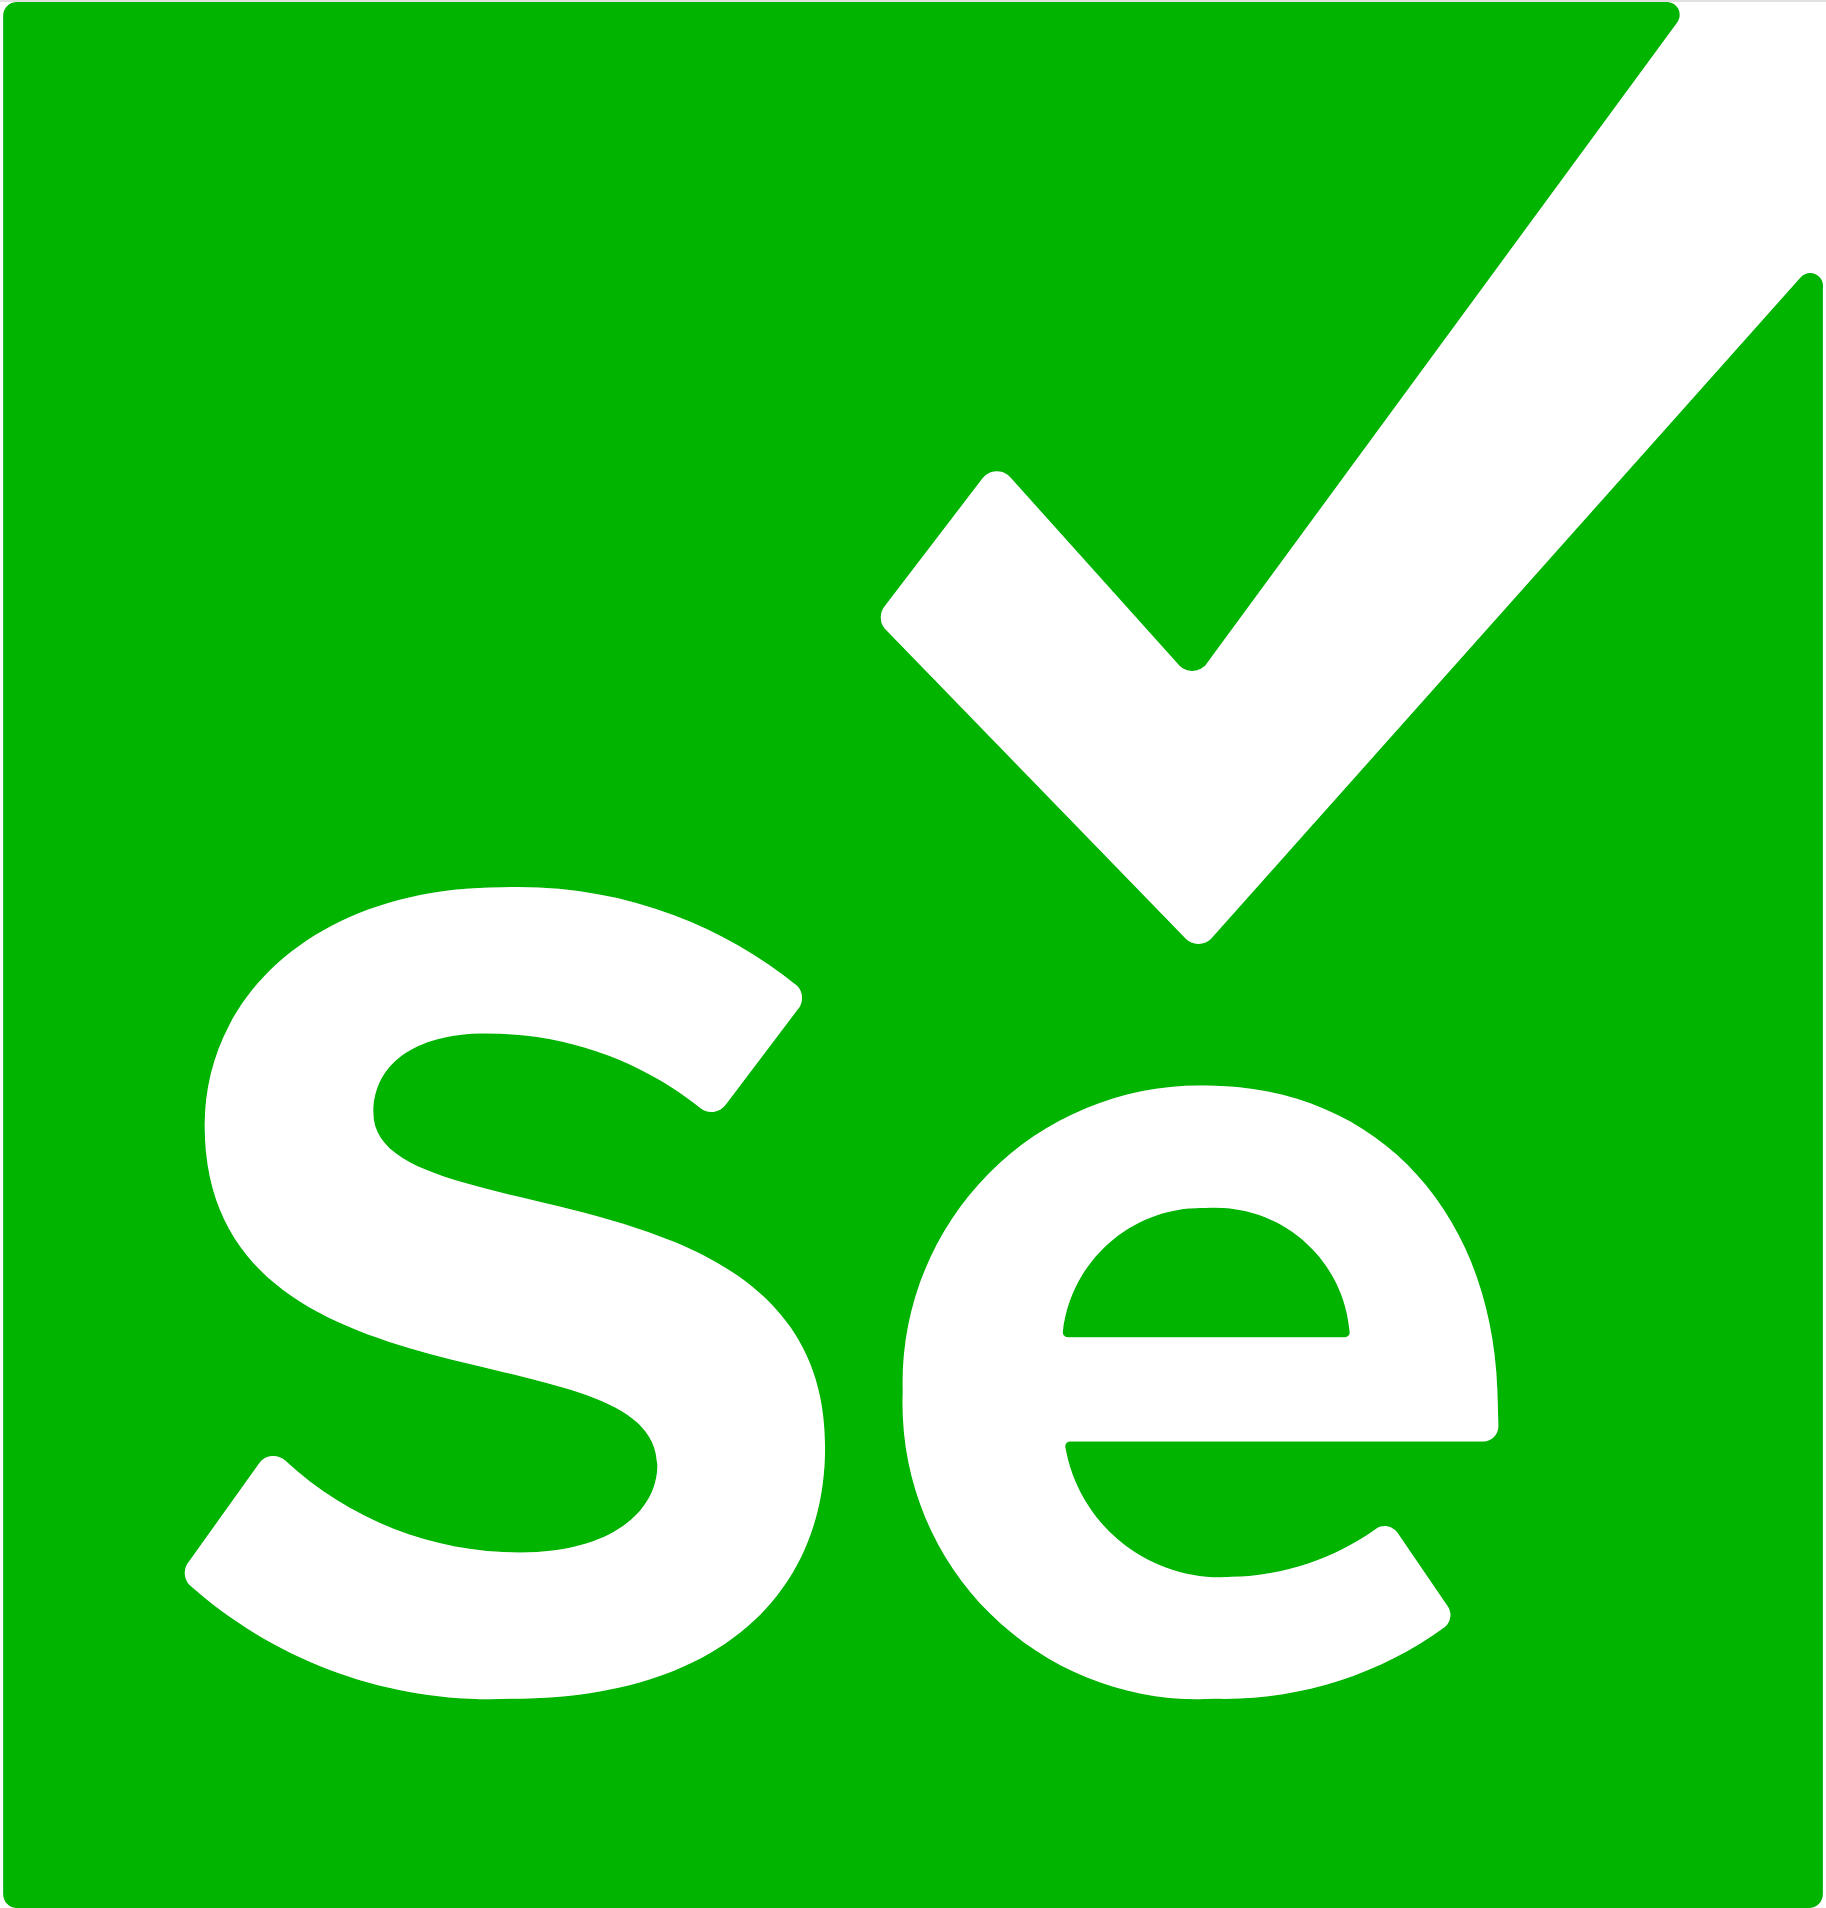 Ảnh logo của Selenium, nguồn ảnh selenium.dev


